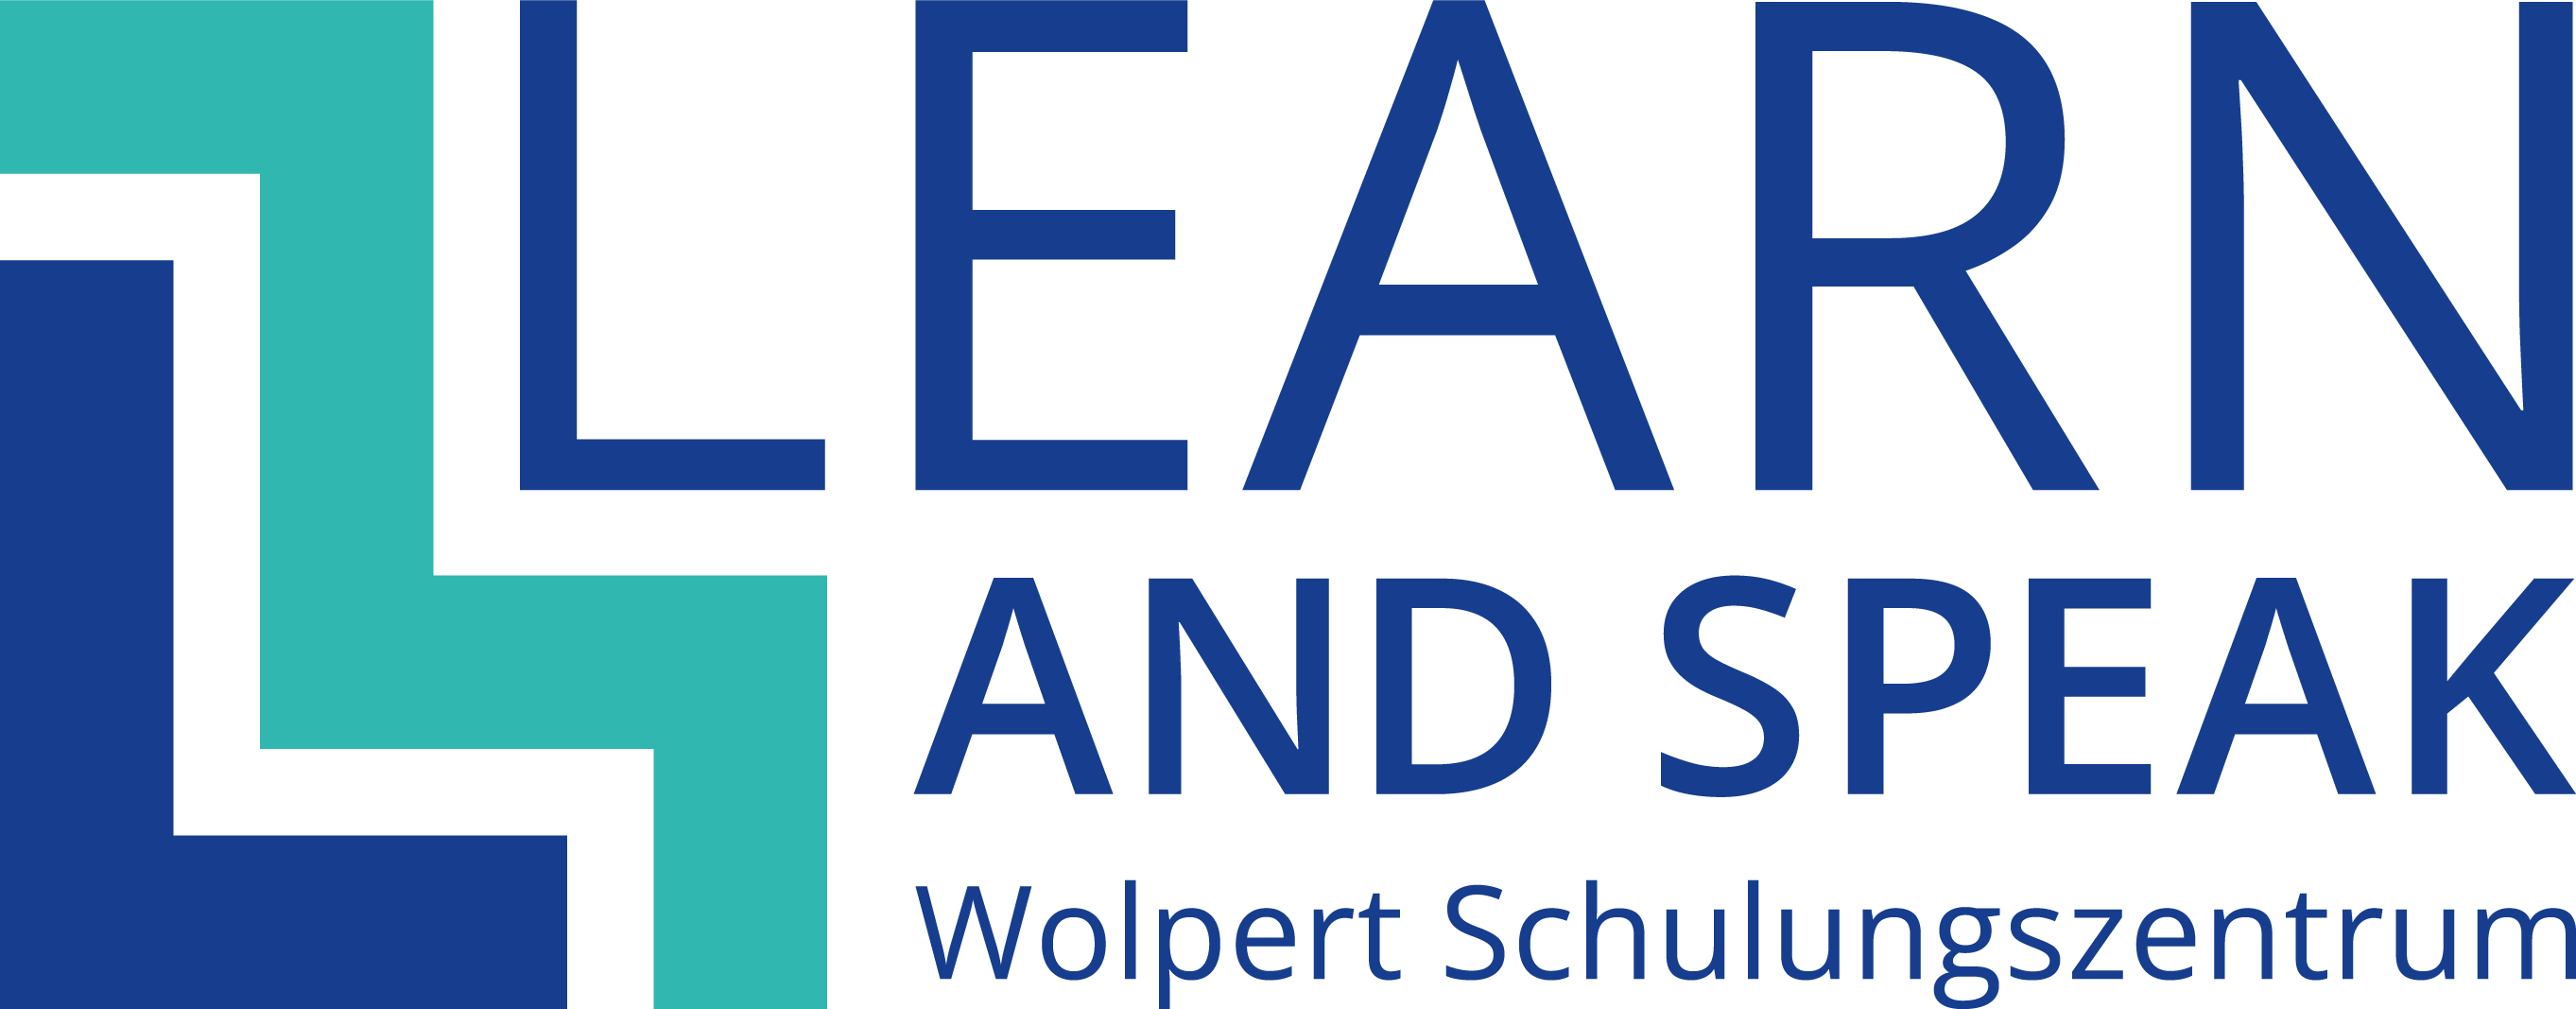 Wolpert Schulungszentrum GmbH